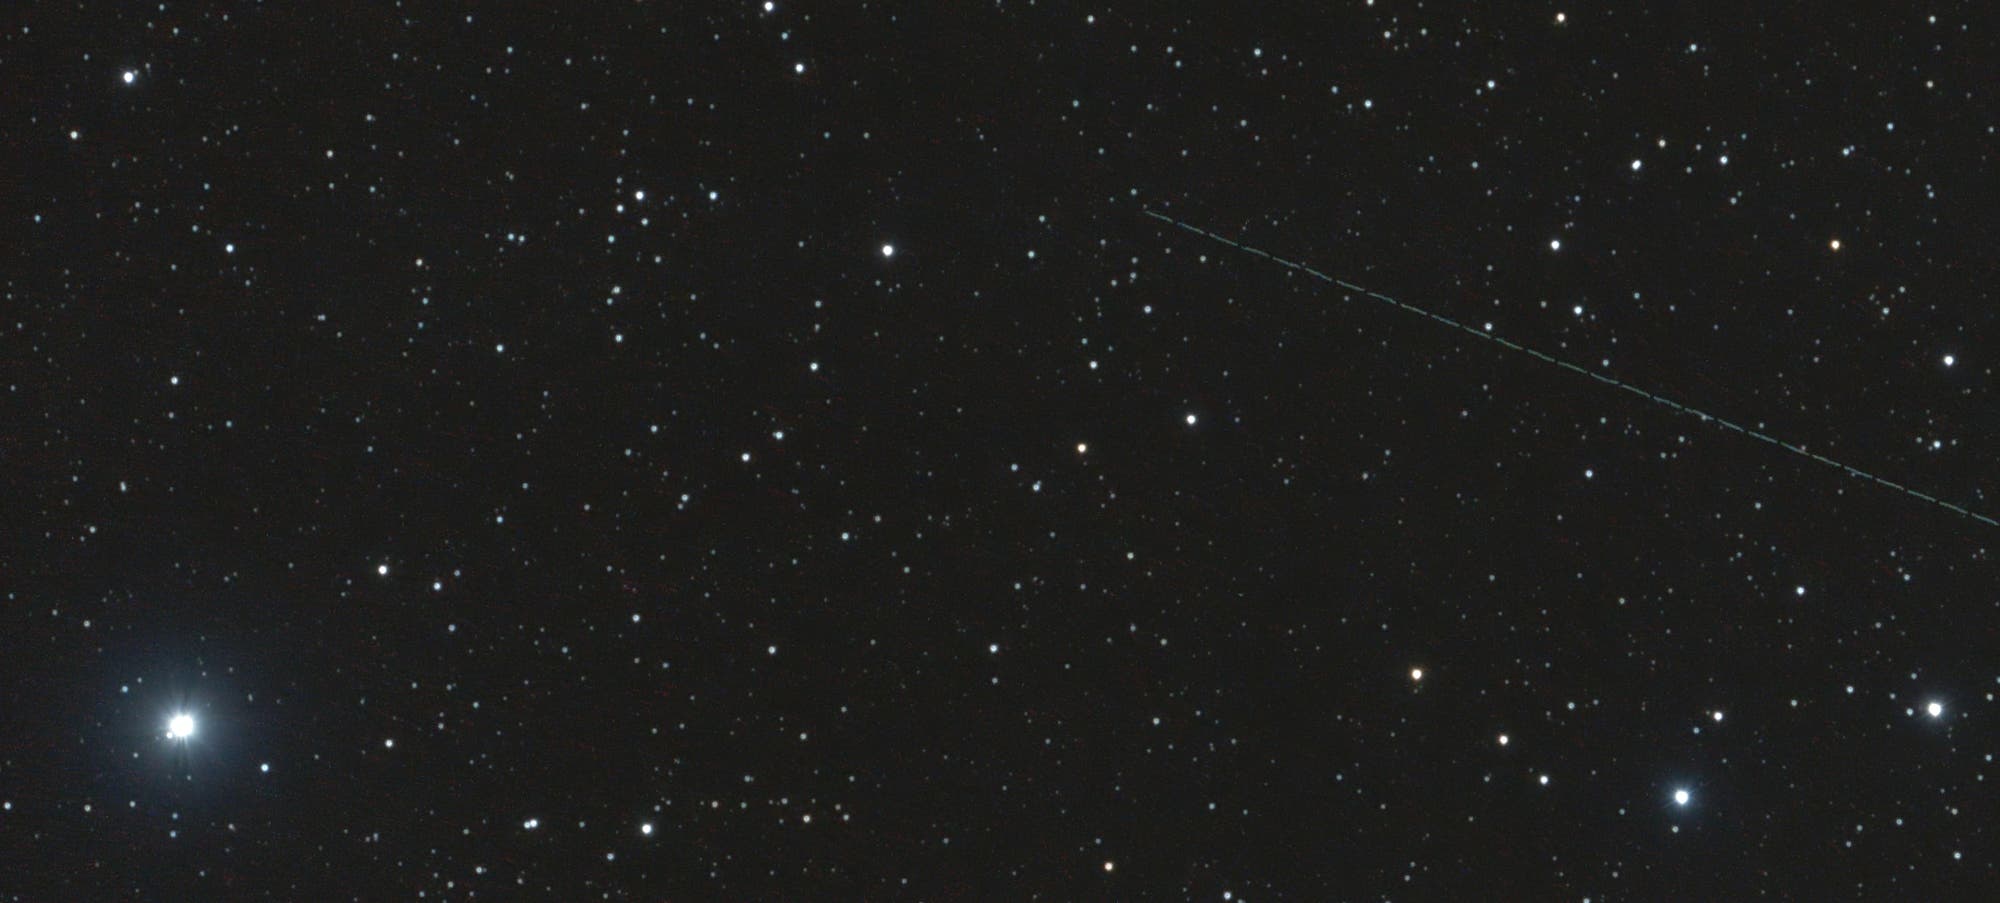 Apollo-Asteroid (153958) 2002 AM31